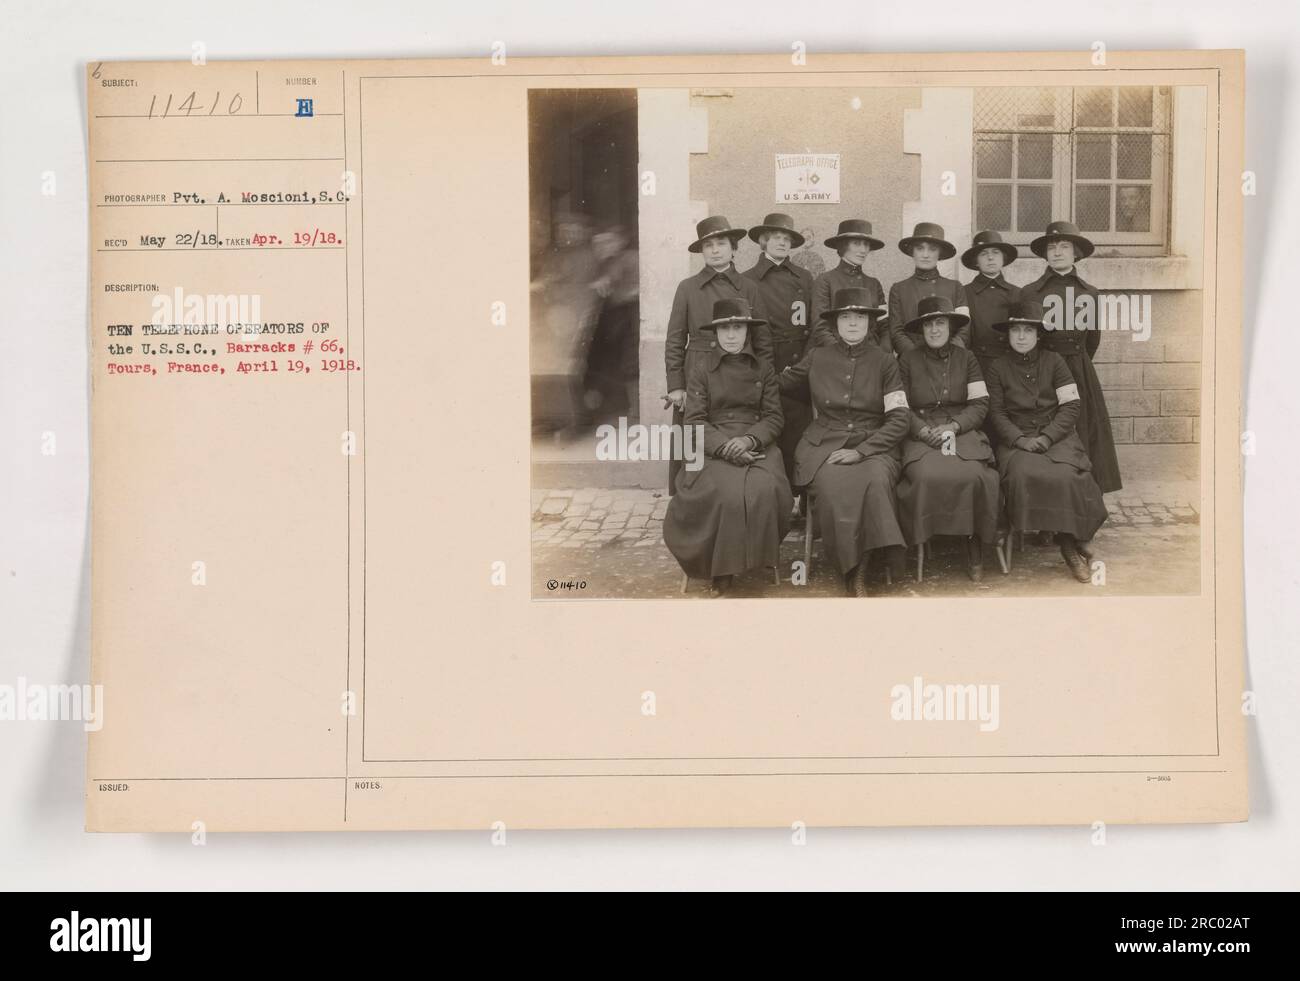 Dieses Foto zeigt zehn Telefonisten aus der US-amerikanischen Krankenstation, stationiert in Baracke Nr. 66 in Tours, Frankreich. Das Foto wurde am 19. April 1918 aufgenommen. Der Fotograf war Gefreiter A. Moscioni, S.C. Das Bild ging am 22. Mai 1918 ein. Die angegebene Beschreibung identifiziert die Subjects und den Speicherort. In den Notizen steht die Anwesenheit eines Telegrafenbüros der US-Armee. Stockfoto